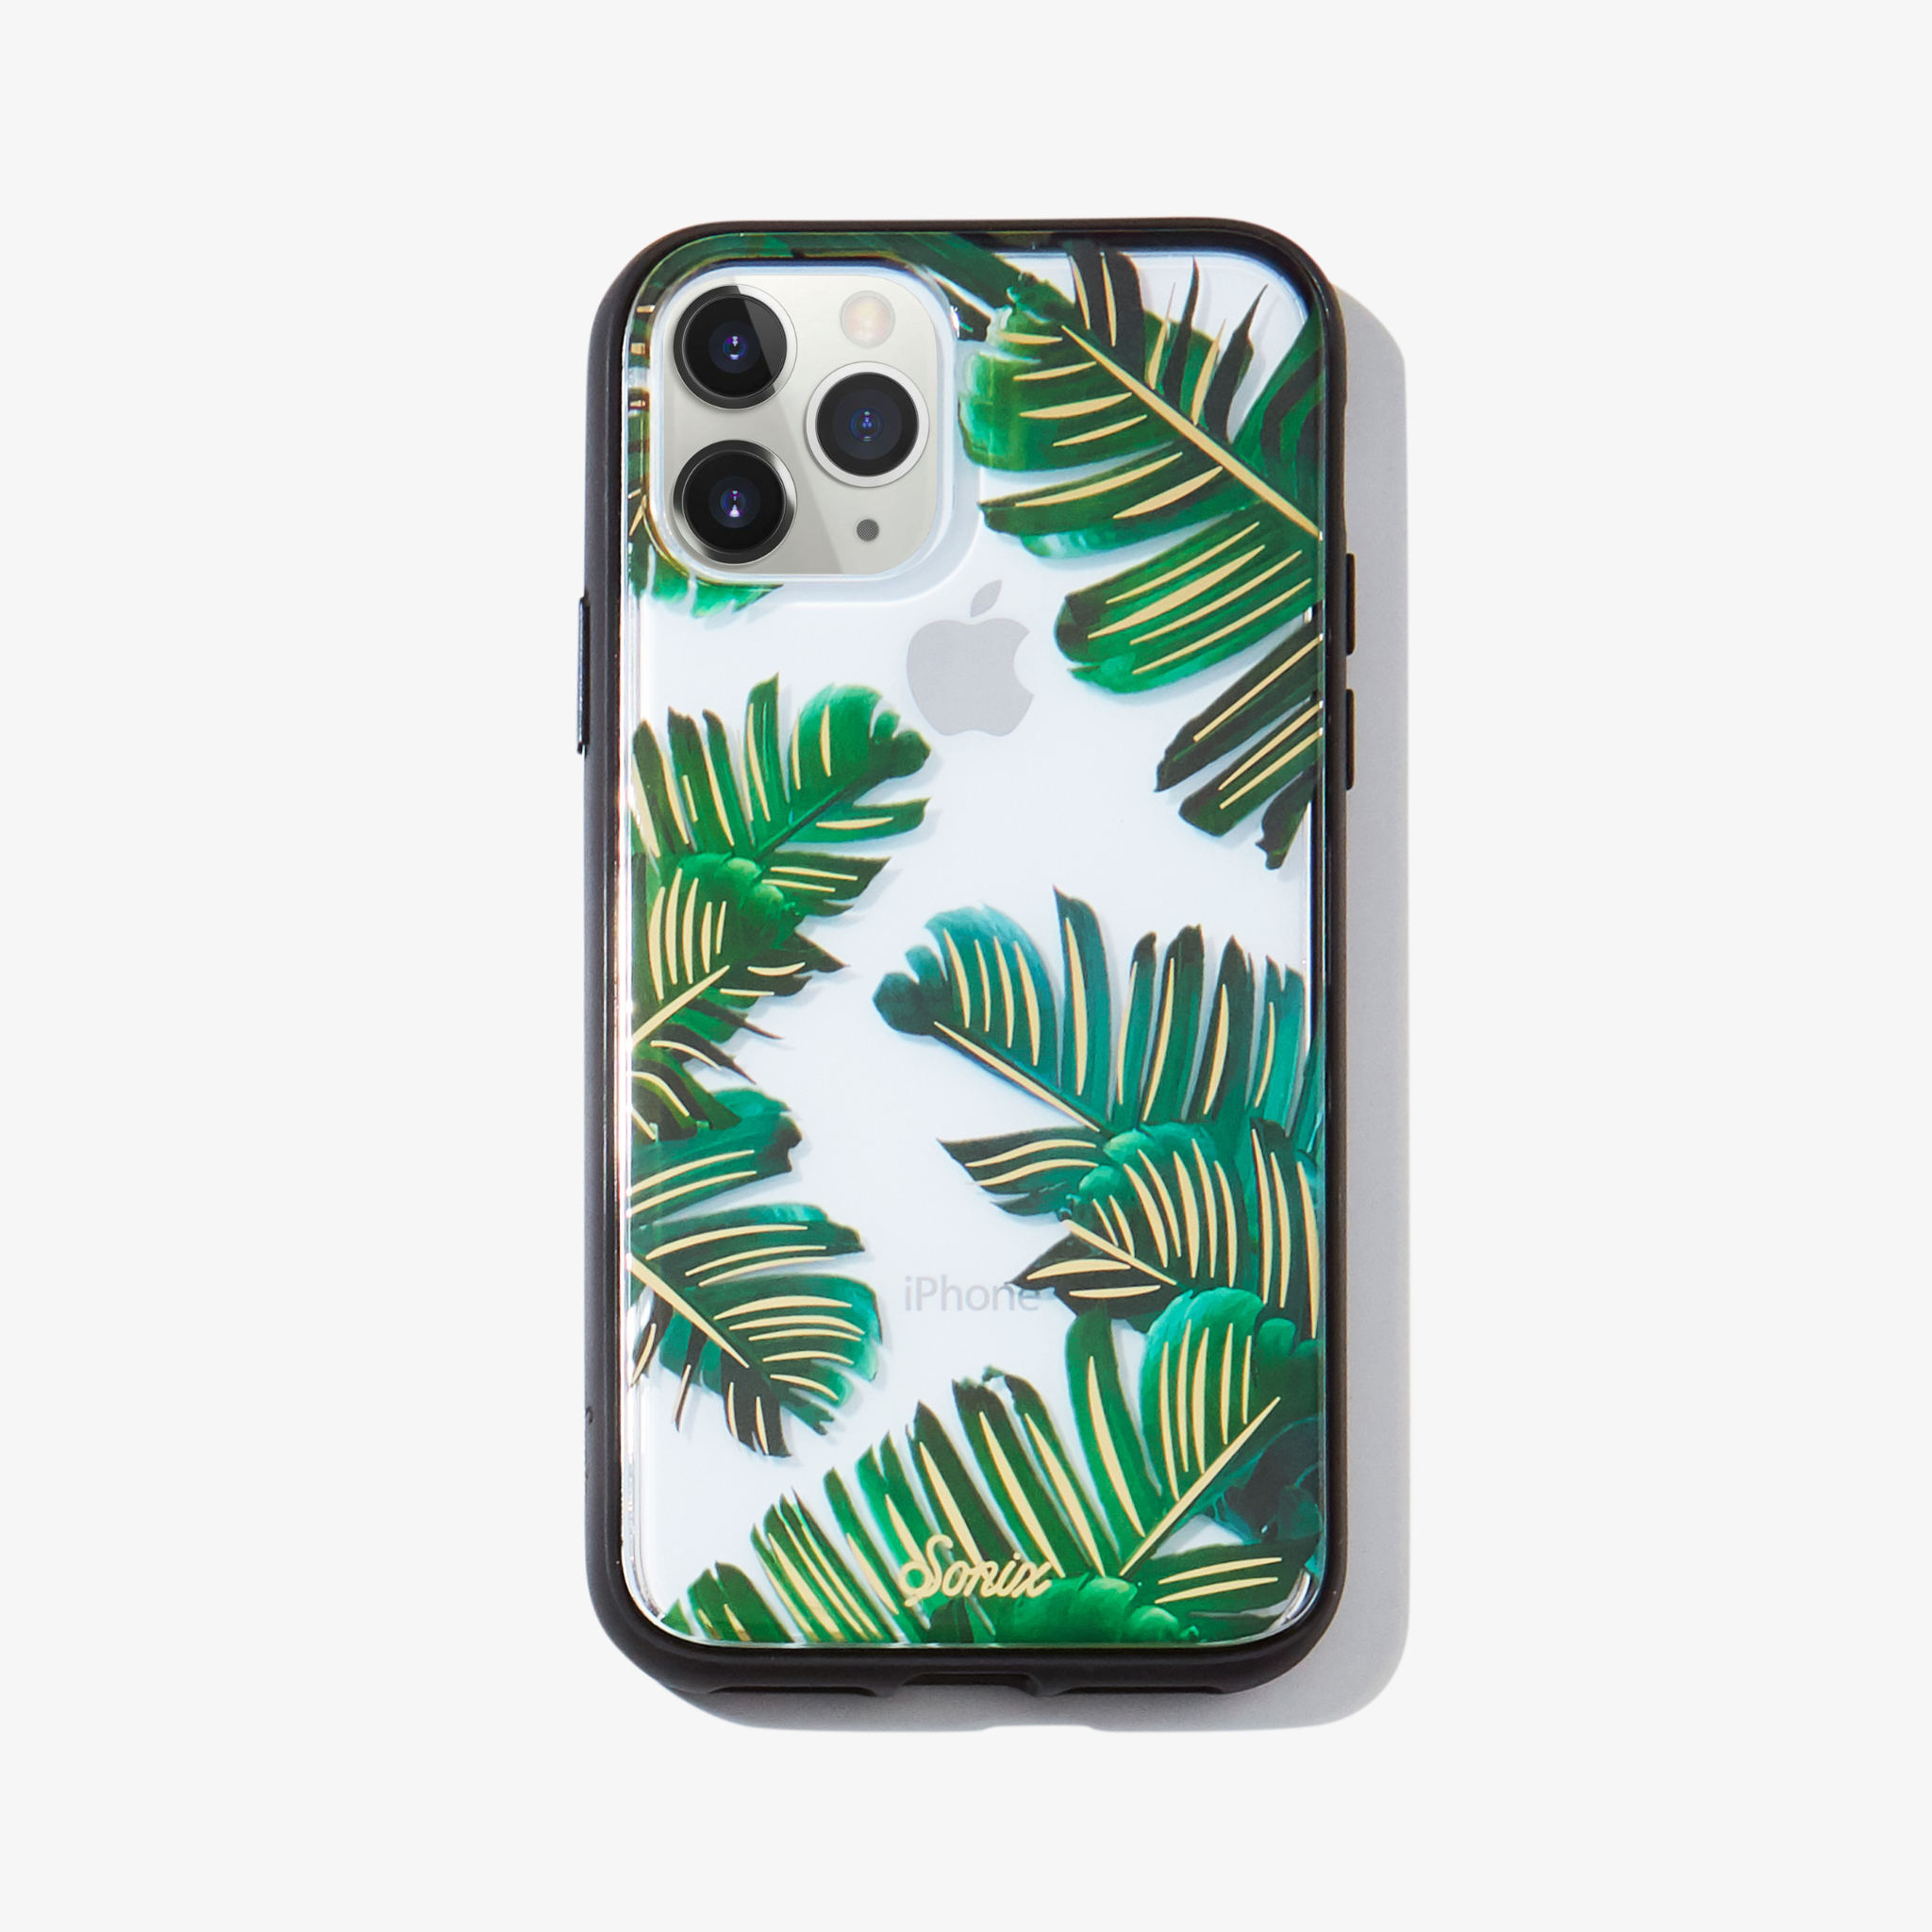 Bahama palm leaves iPhone 11 pro phone case on white phone.